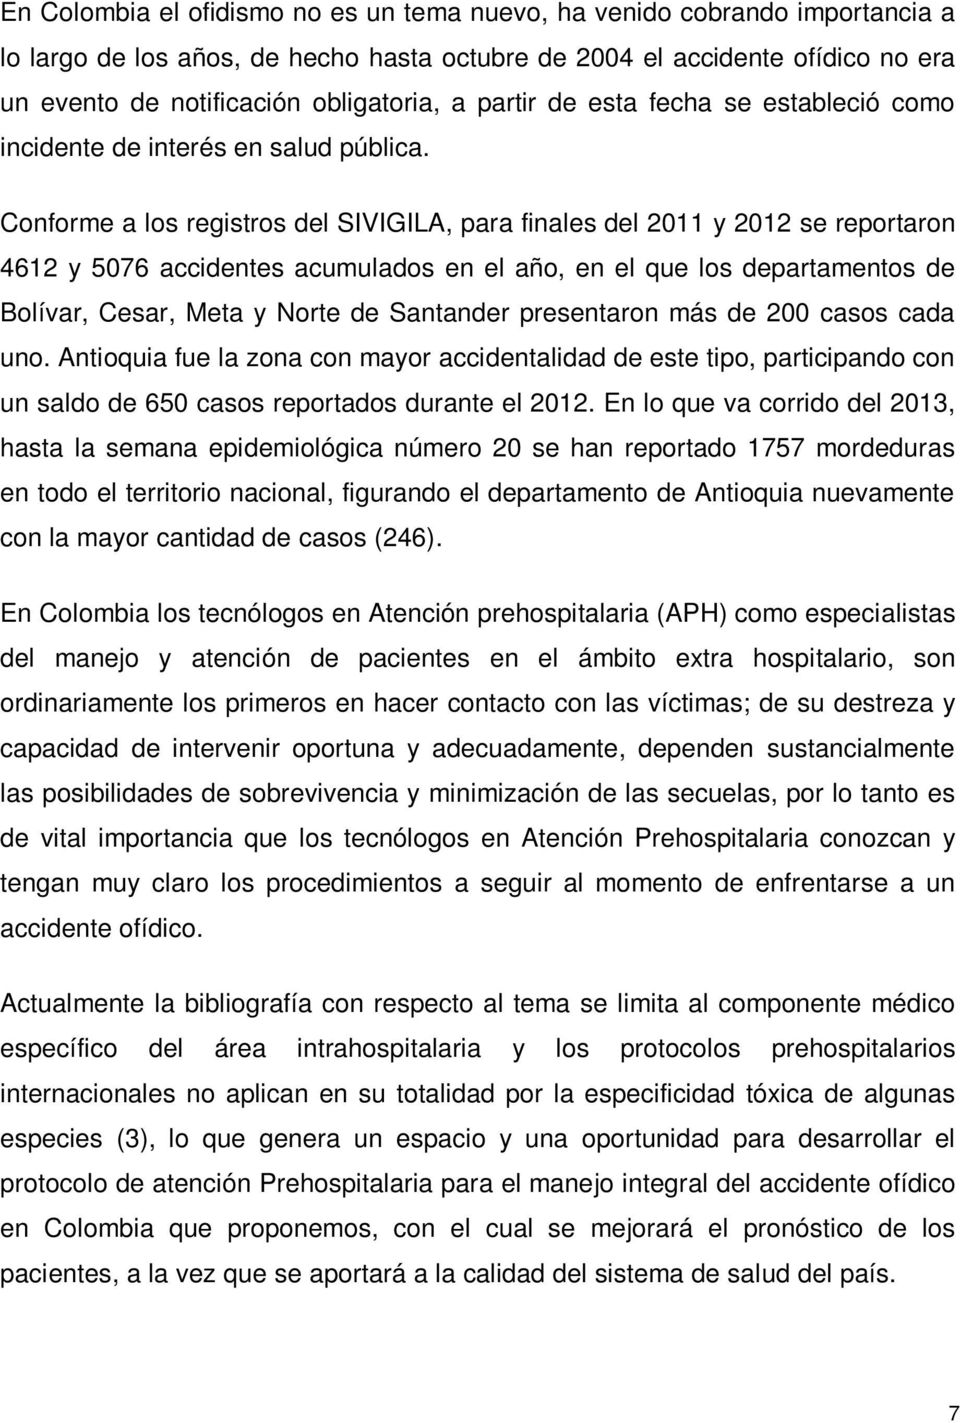 Conforme a los registros del SIVIGILA, para finales del 2011 y 2012 se reportaron 4612 y 5076 accidentes acumulados en el año, en el que los departamentos de Bolívar, Cesar, Meta y Norte de Santander